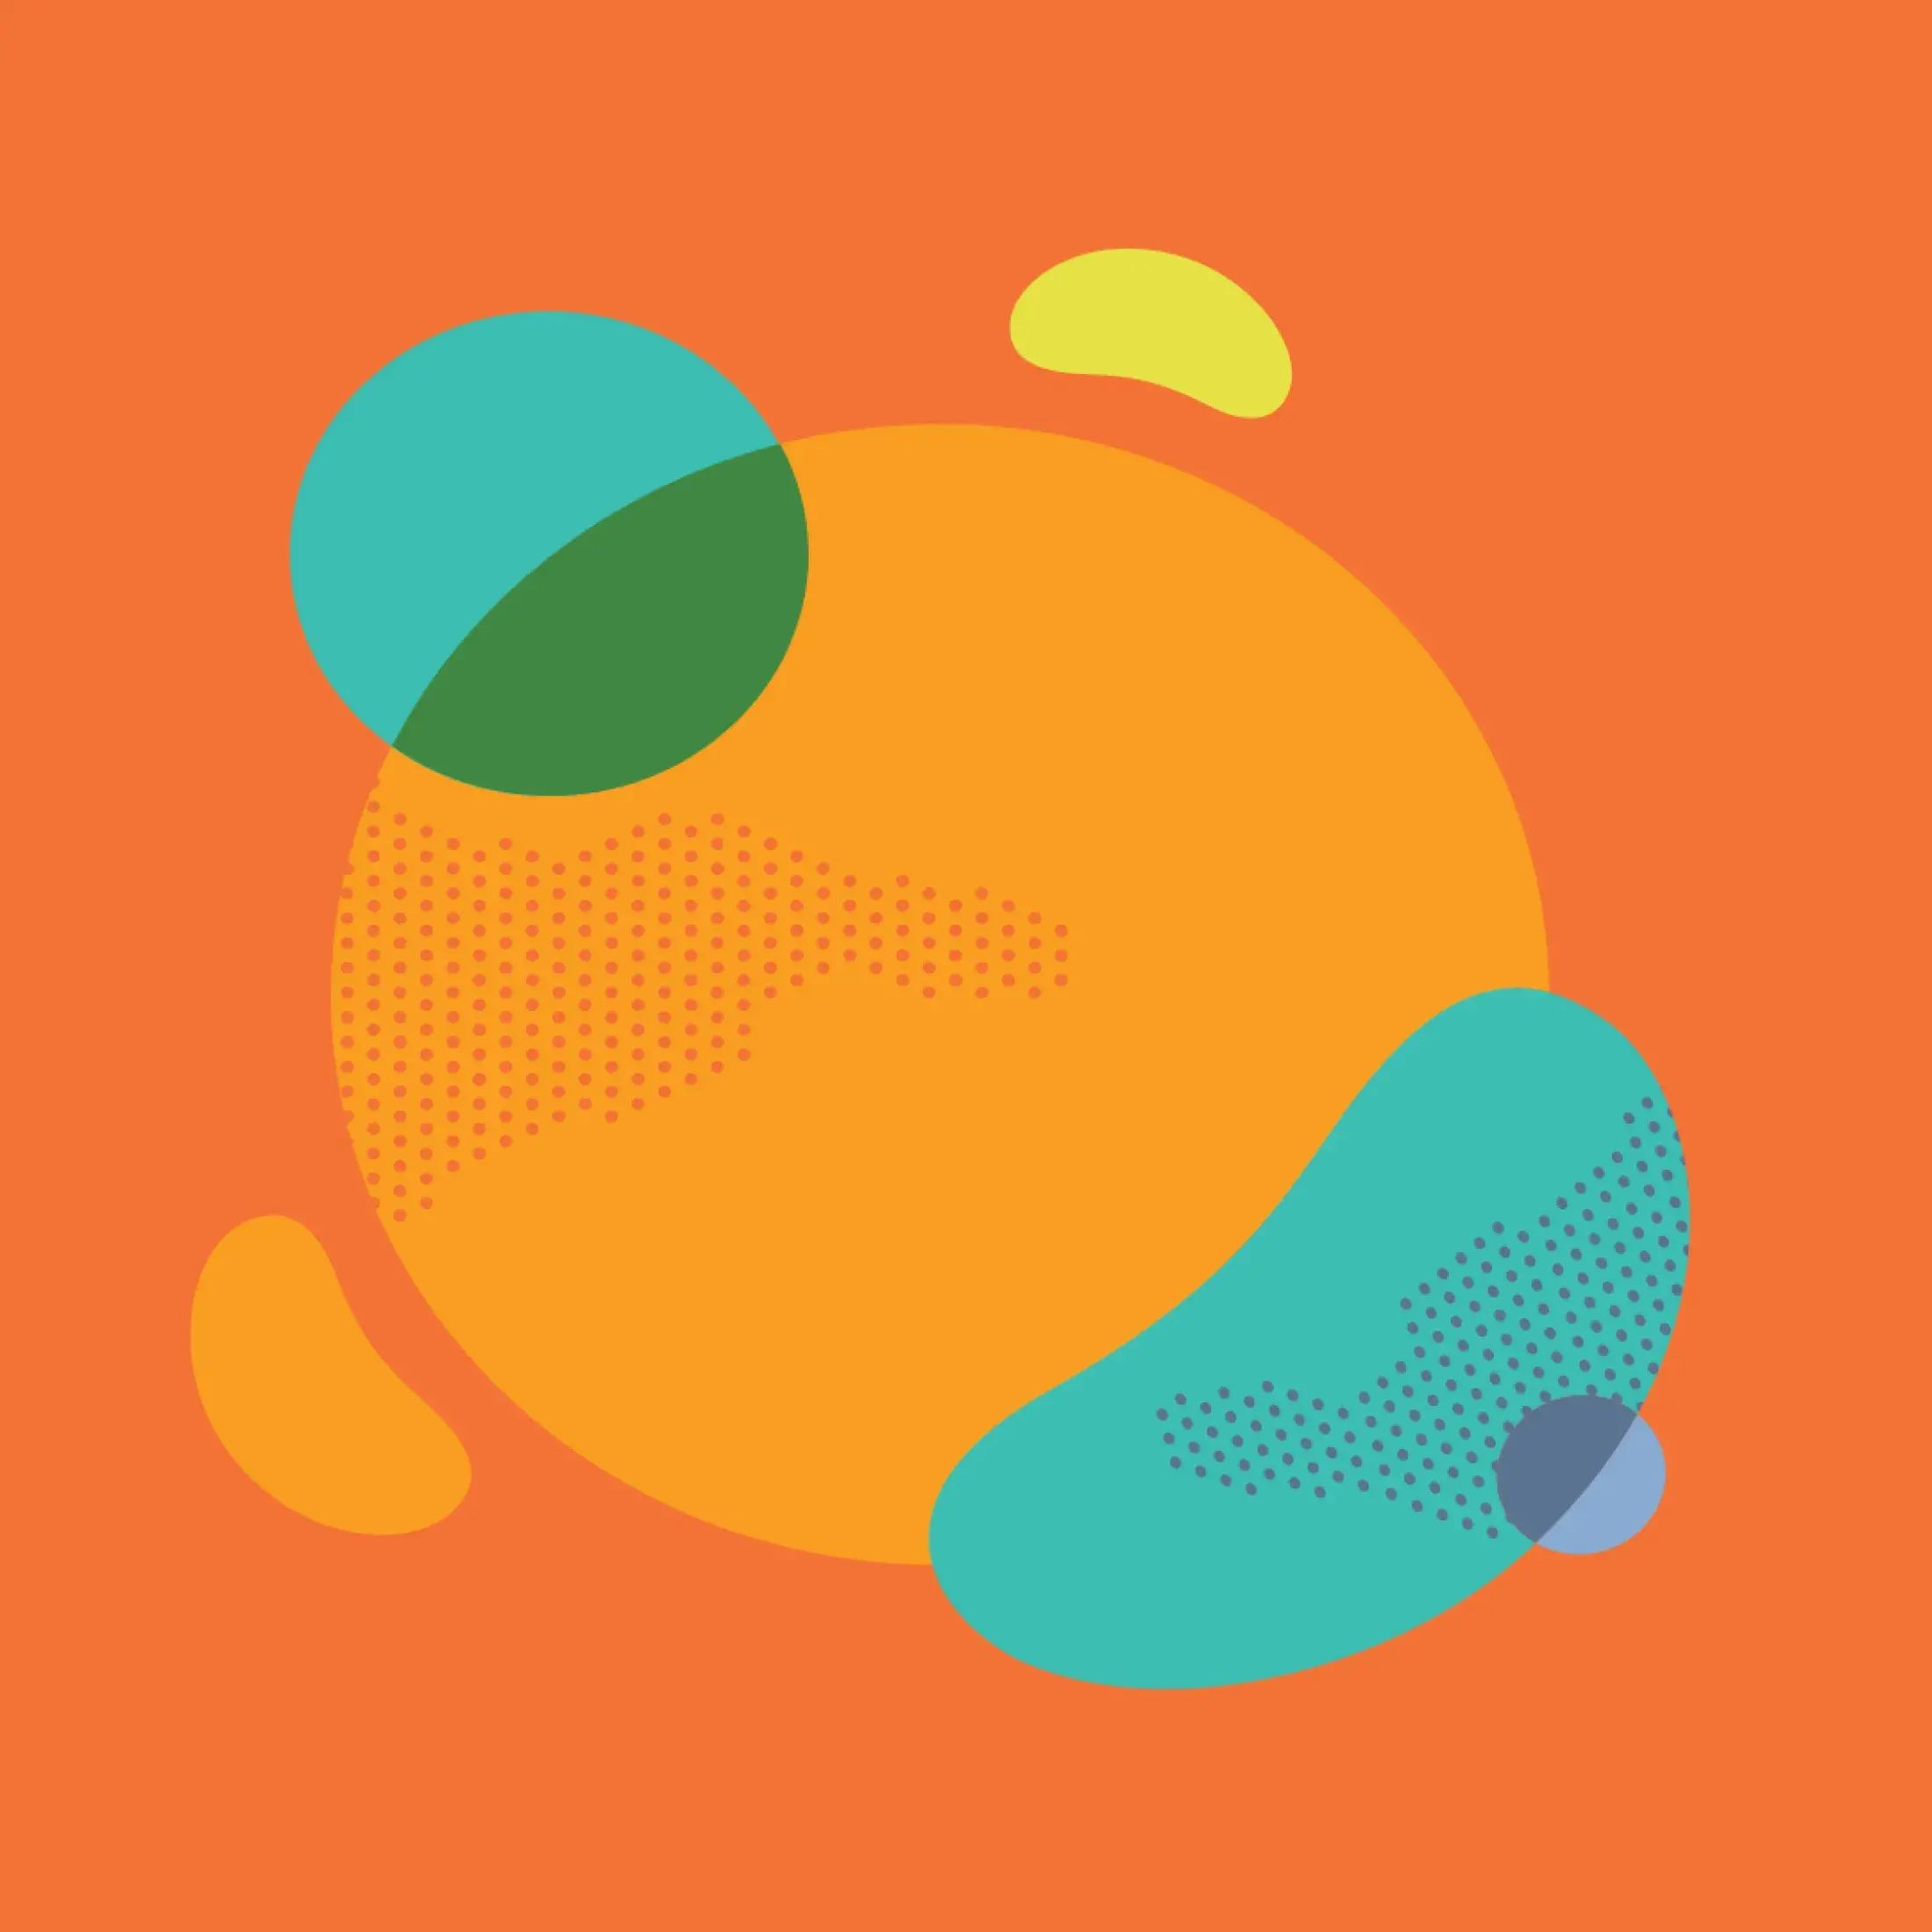 key visual of orange circle with blue shapes surrounding